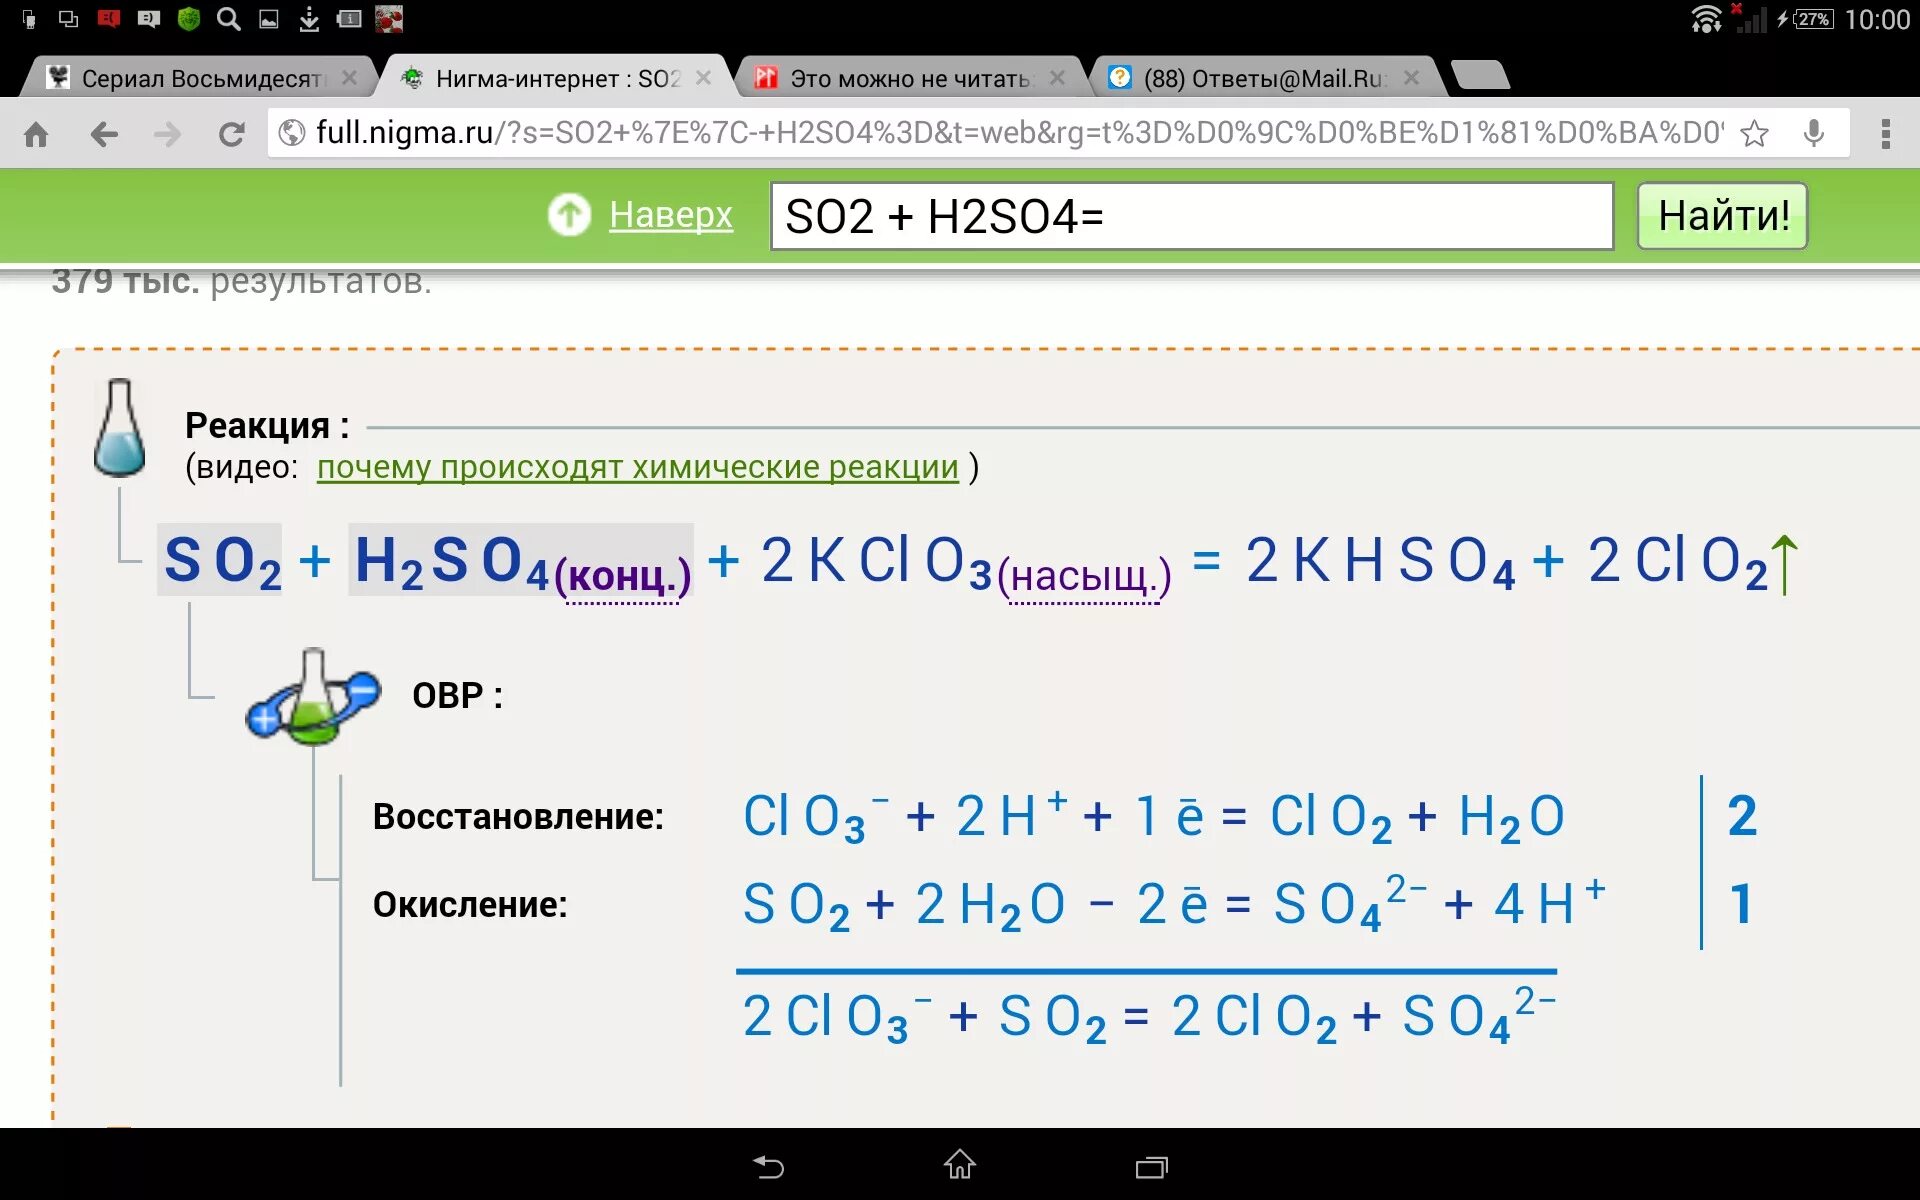 23h2 update. So2 h2so4. S h2so4 so2. S+h2so4 конц so2+h2o. S=h2so4=so2+h2).